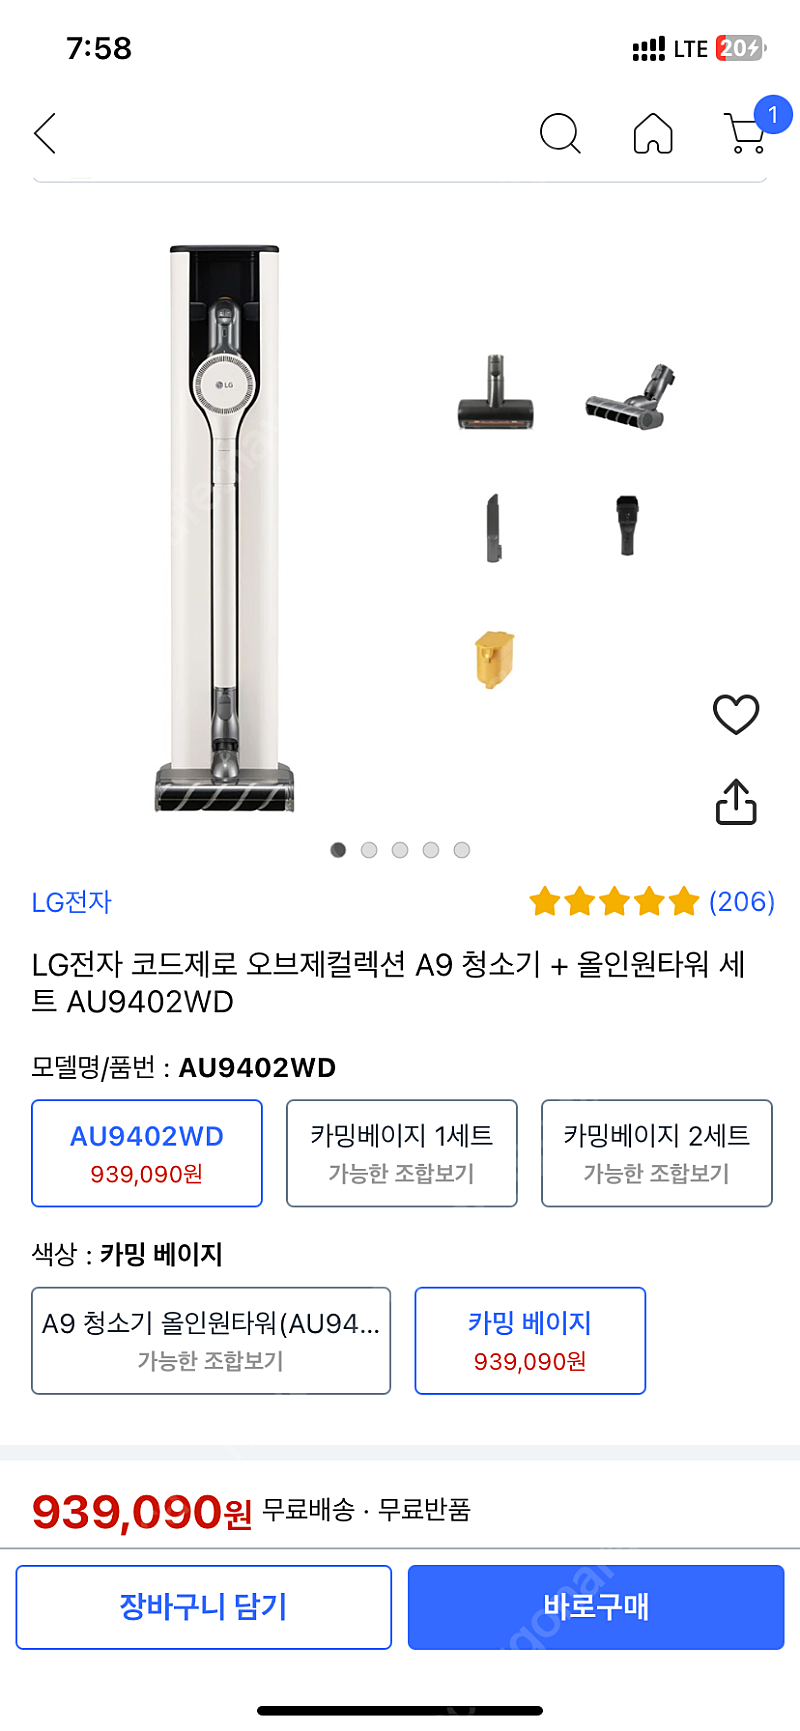 [미개봉새상품]LG 코드제로 오브제컬렉션 A9 올인원타워 청소기 (카밍베이지)_AU9402WD